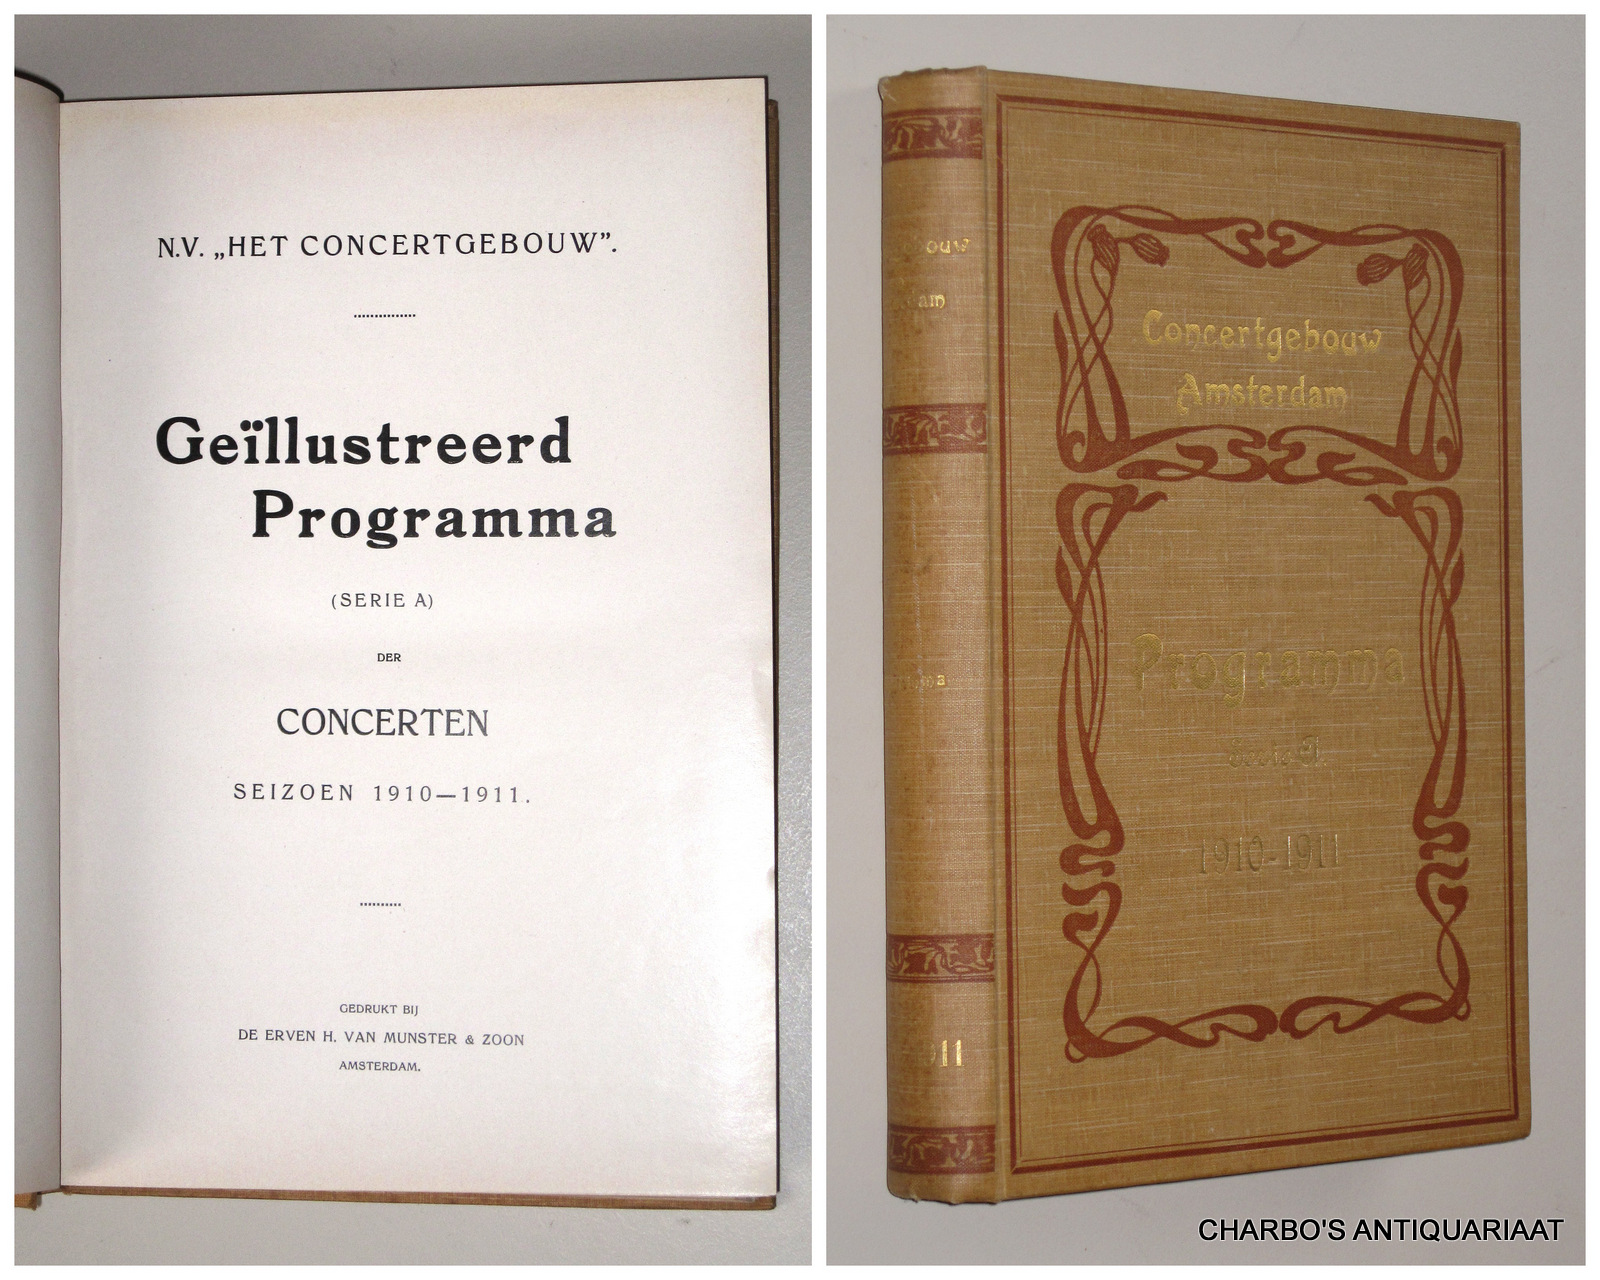 CONCERTGEBOUW, N.V. HET, -  Gellustreerd programma (serie A) der concerten seizoen 1910-1911,